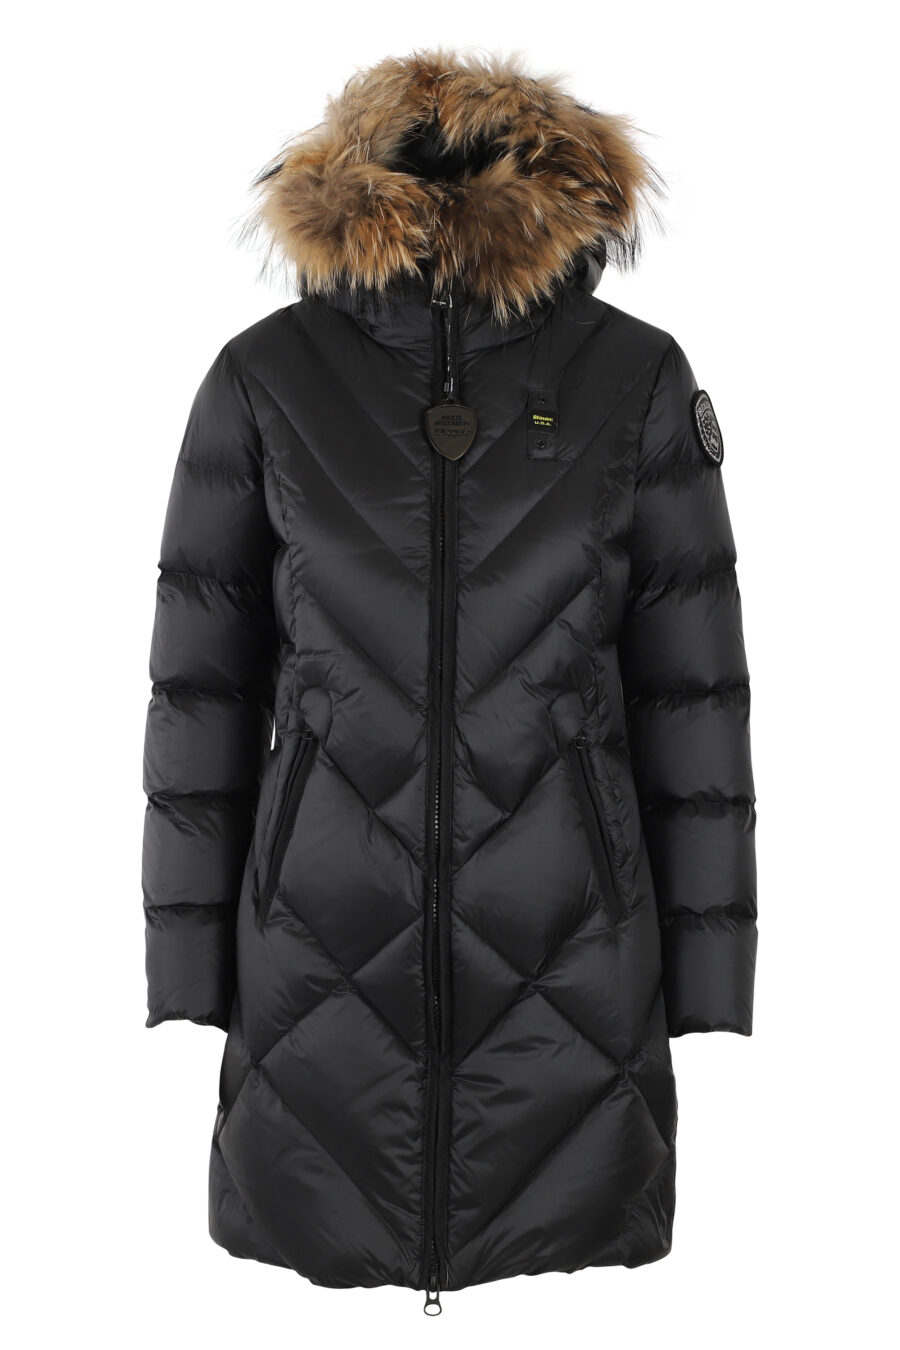 Longue veste noire à capuche avec fourrure et doublure marron - IMG 4988